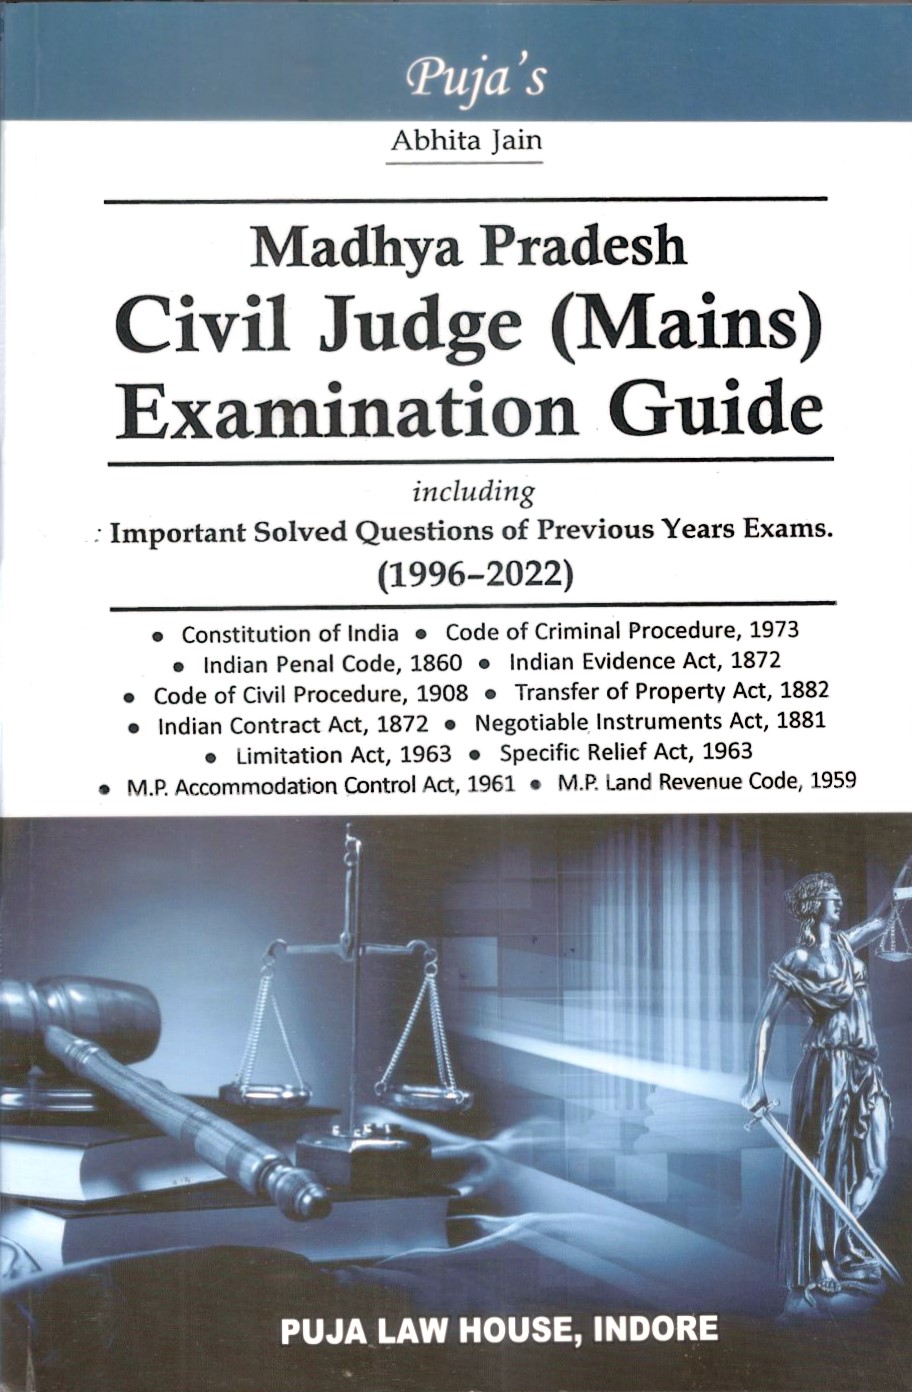 Abhita Jain - Madhya Pradesh Civil Judge (Mains) Examination Guide